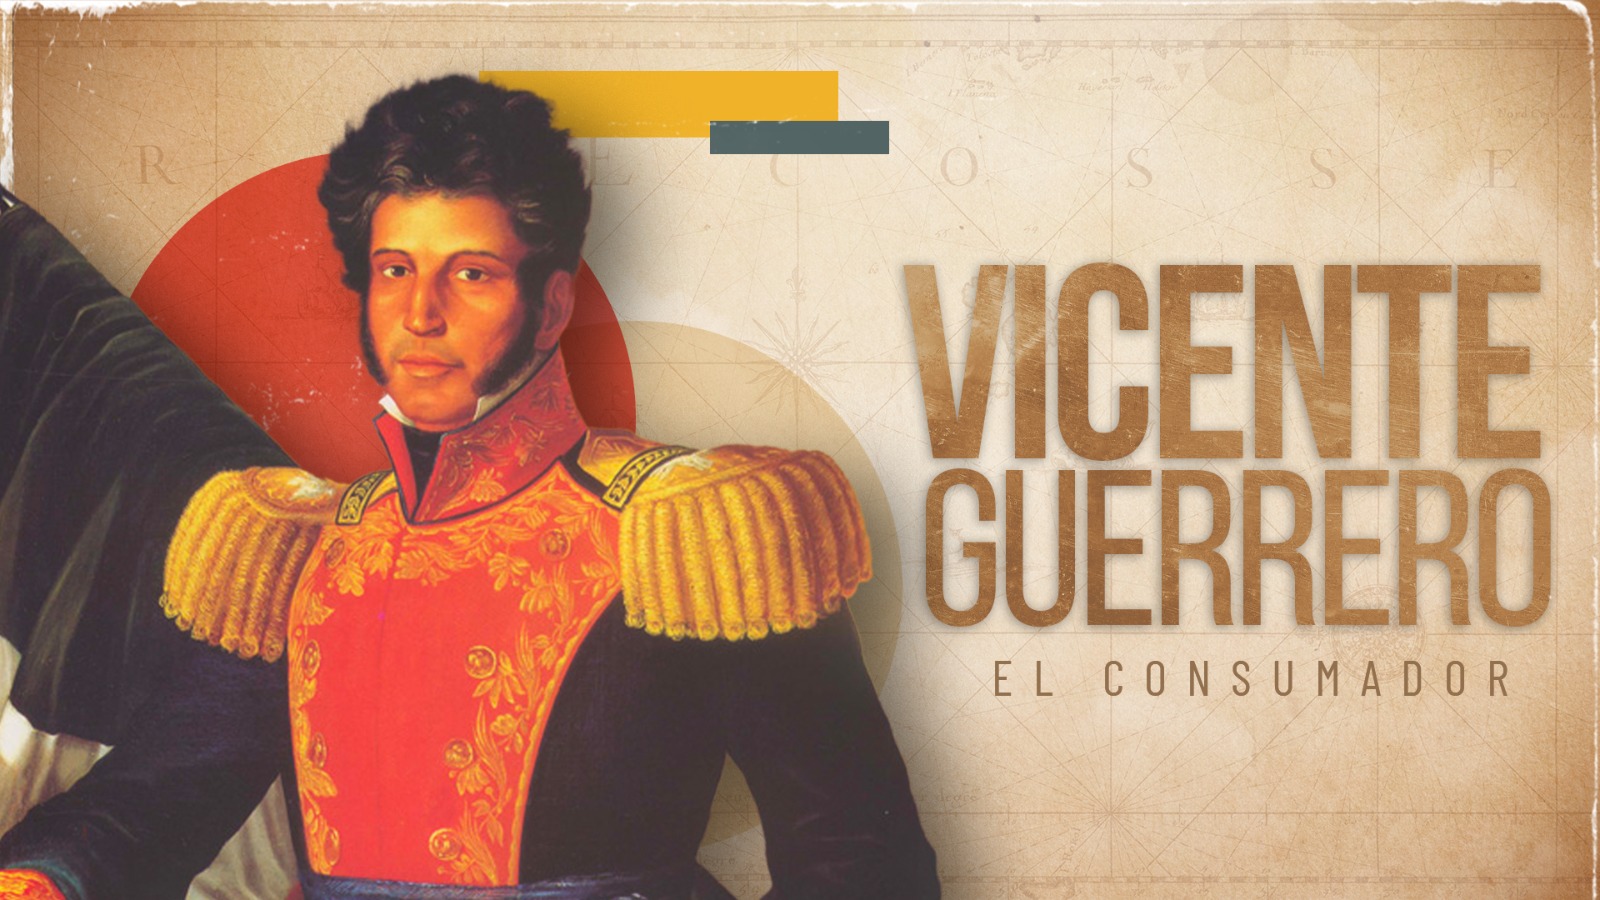 Vicente Guerrero, el consumador